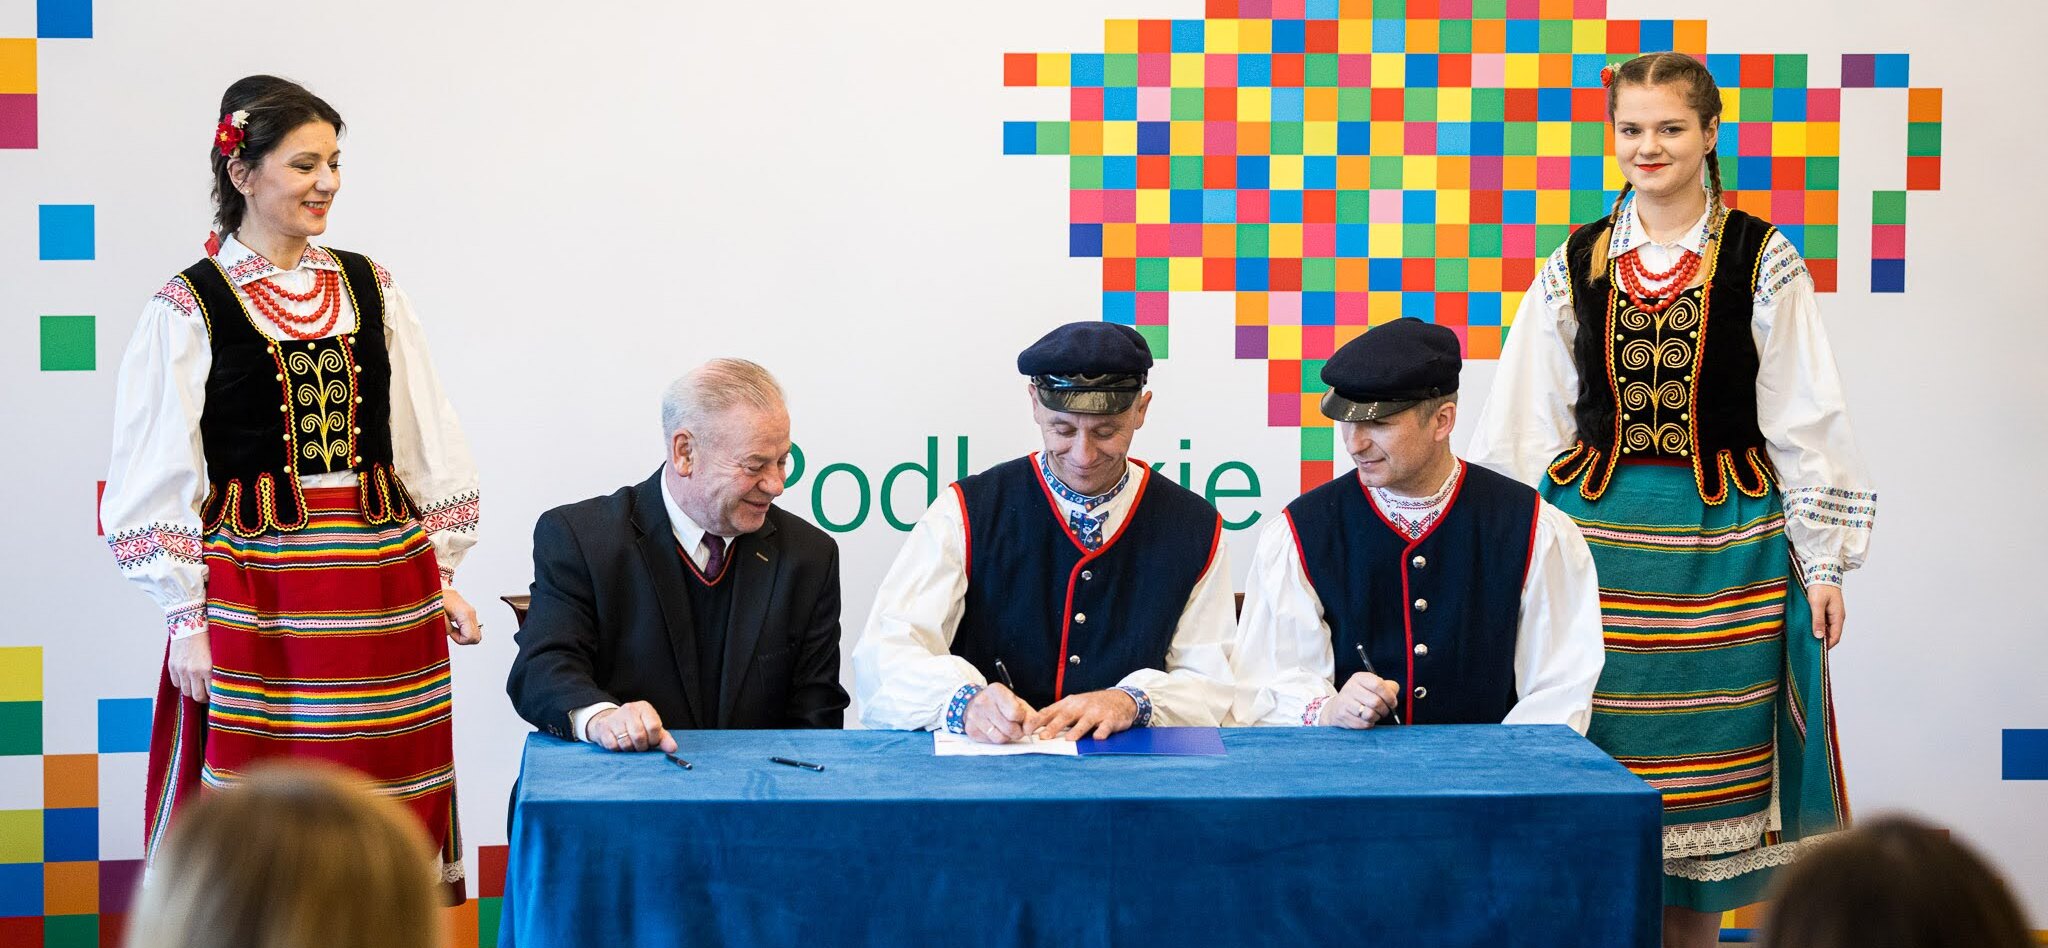 Trzech mężczyzn siedzi przy stole i podpisuje umowy.